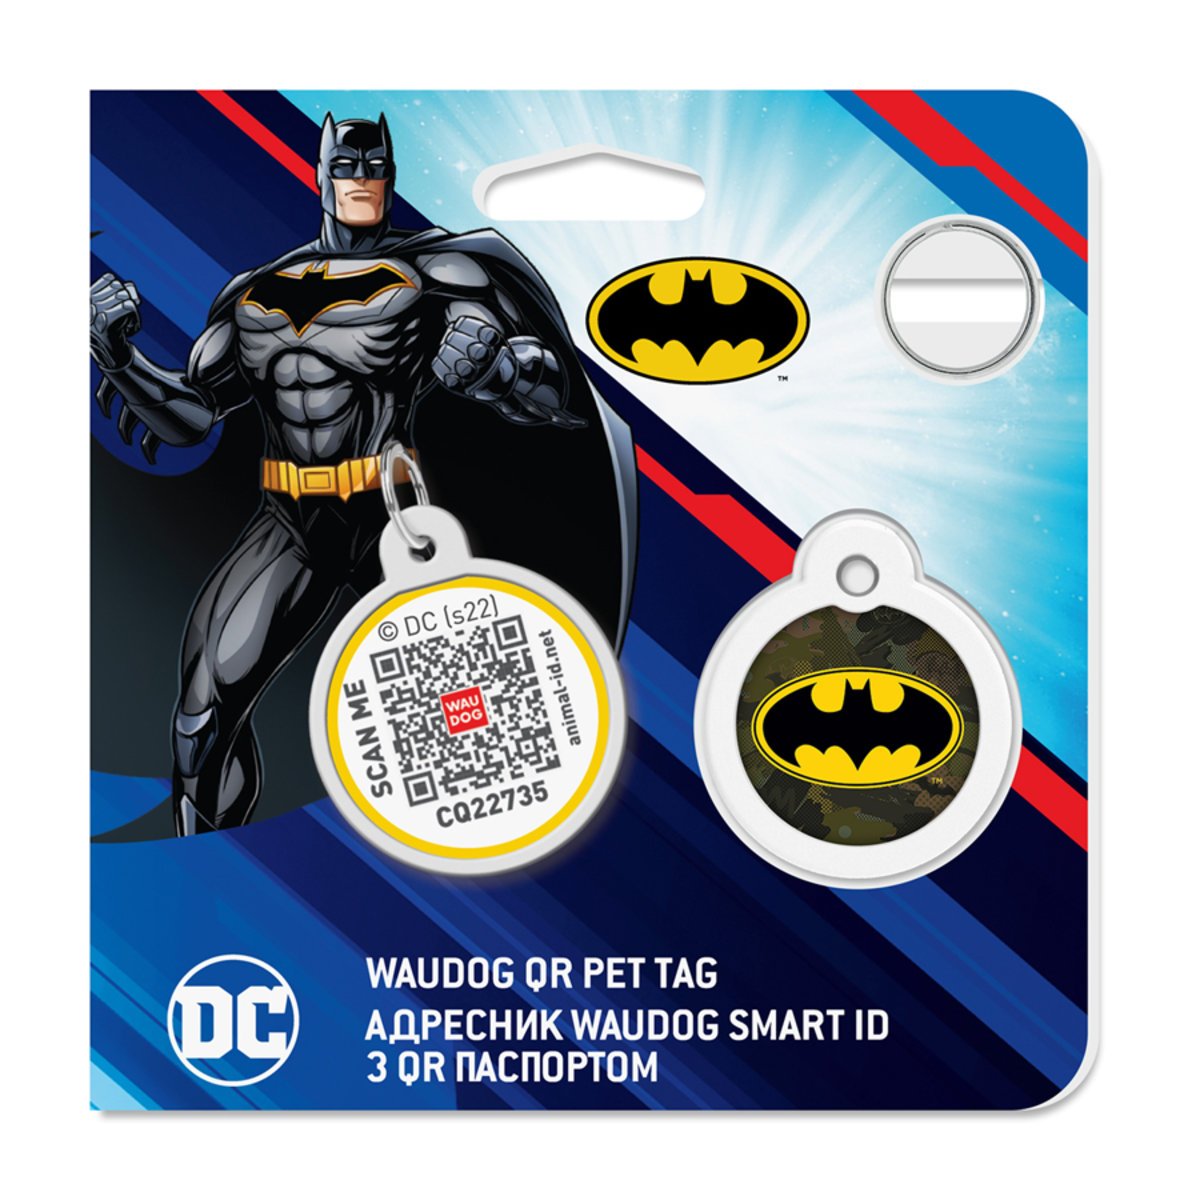 Адресник для собак и кошек Waudog Smart ID с QR паспортом, Бэтмен зеленый, русско-английский, S, диаметр 25 мм - фото 4